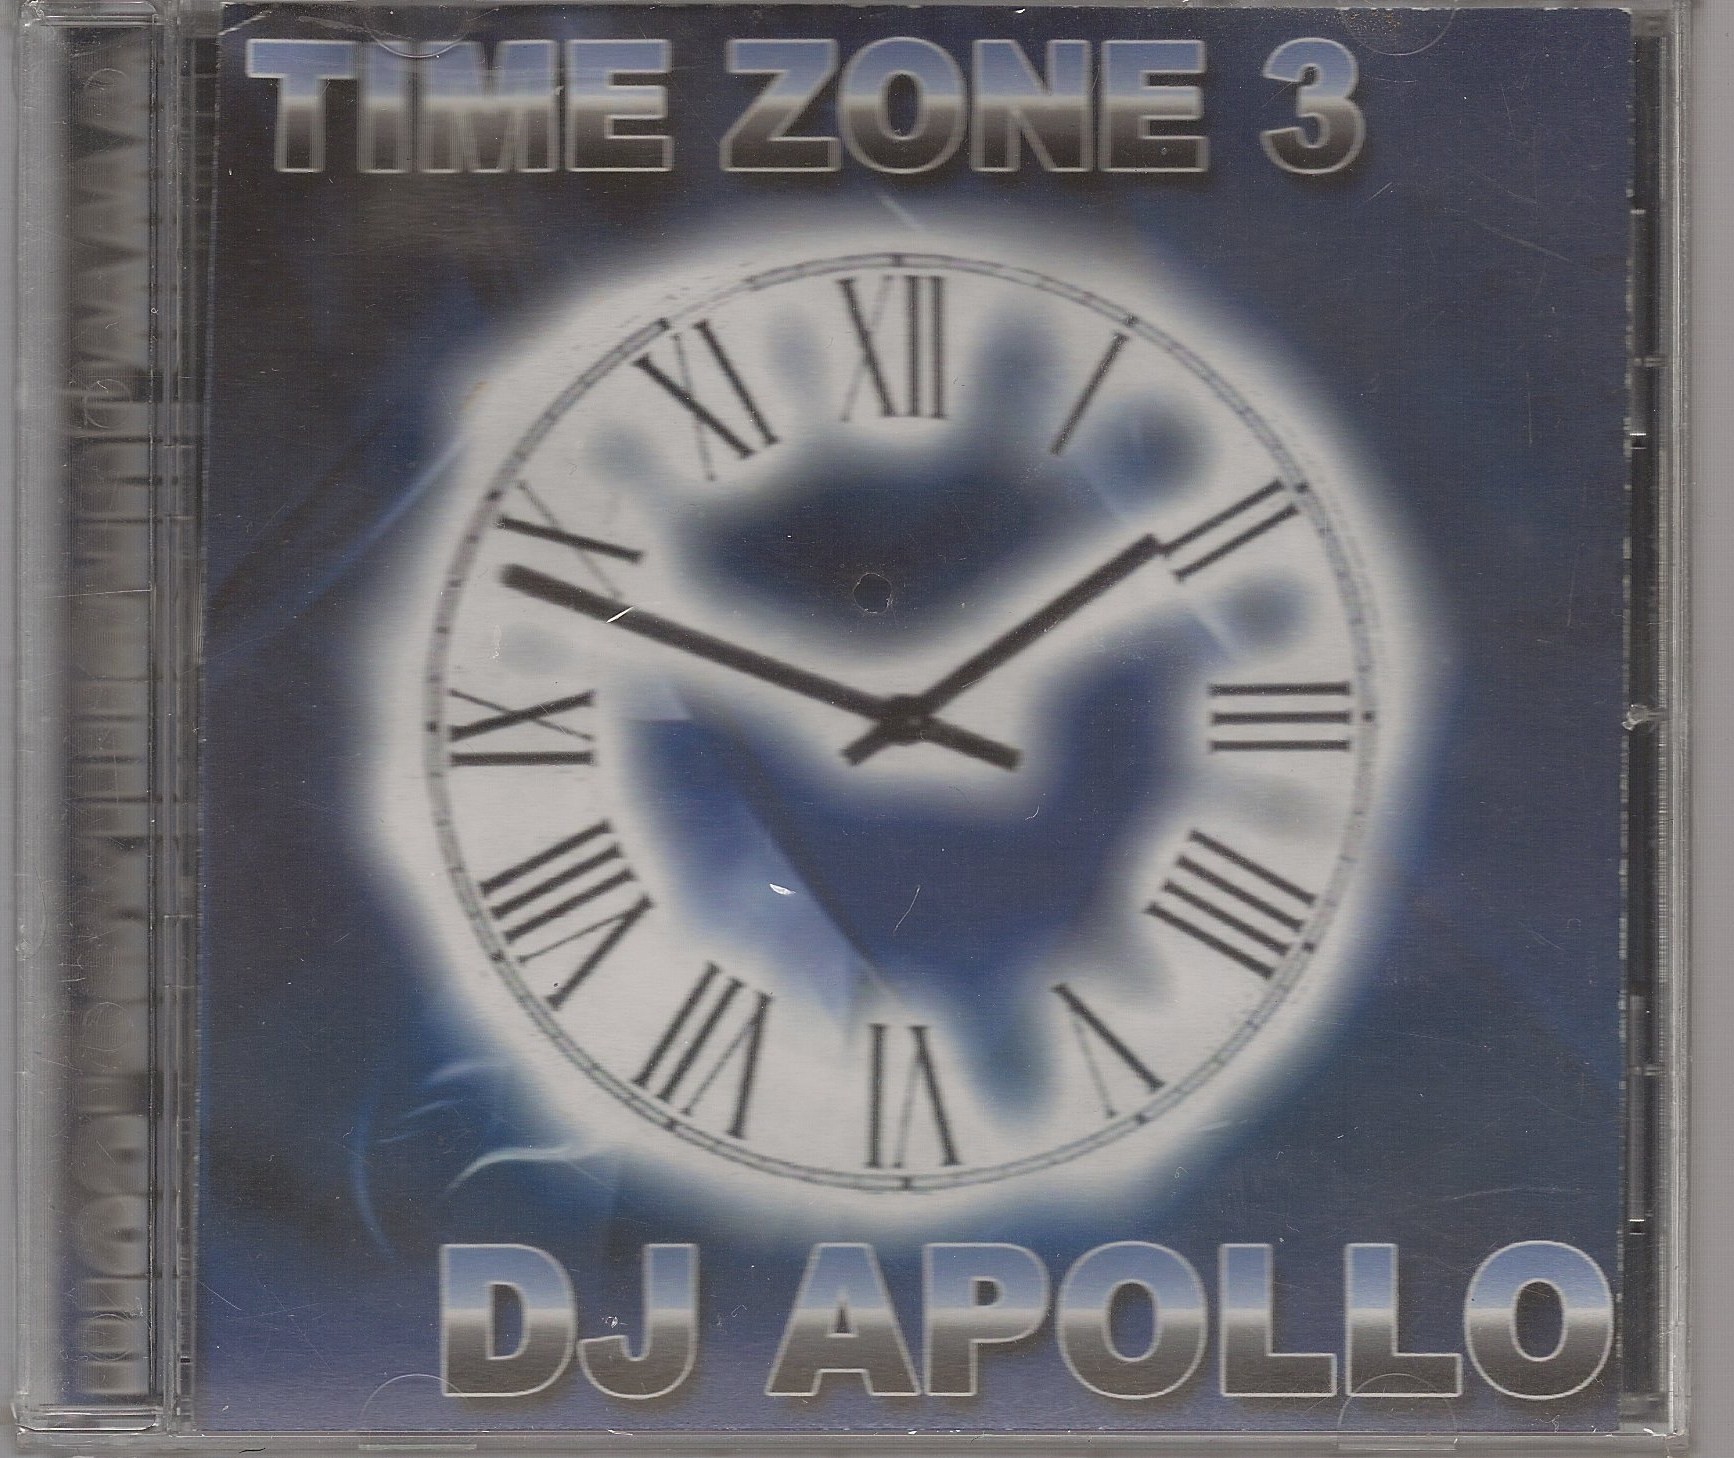 DJ APOLLO - TIME ZONE 3